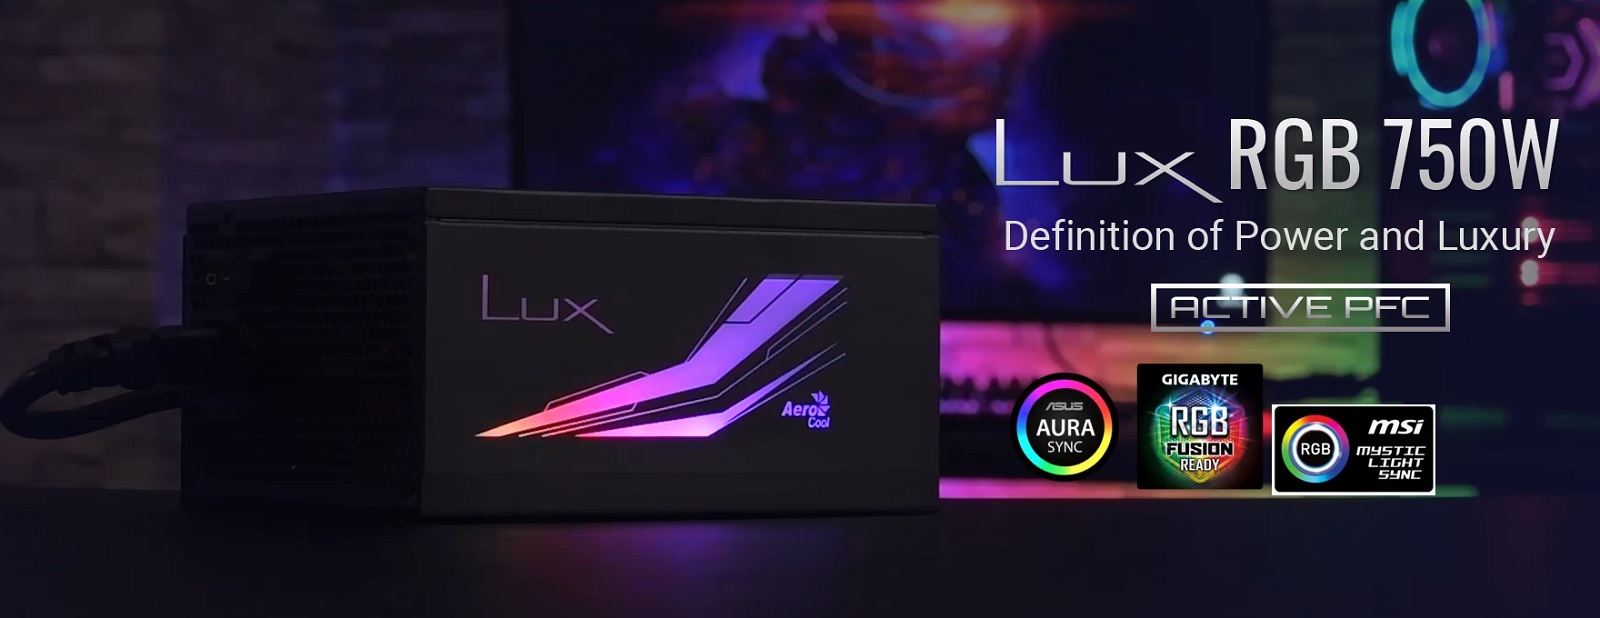 Nguồn Aero Cool Lux RGB 750W - tái định nghĩa hiệu năng và vẻ đẹp